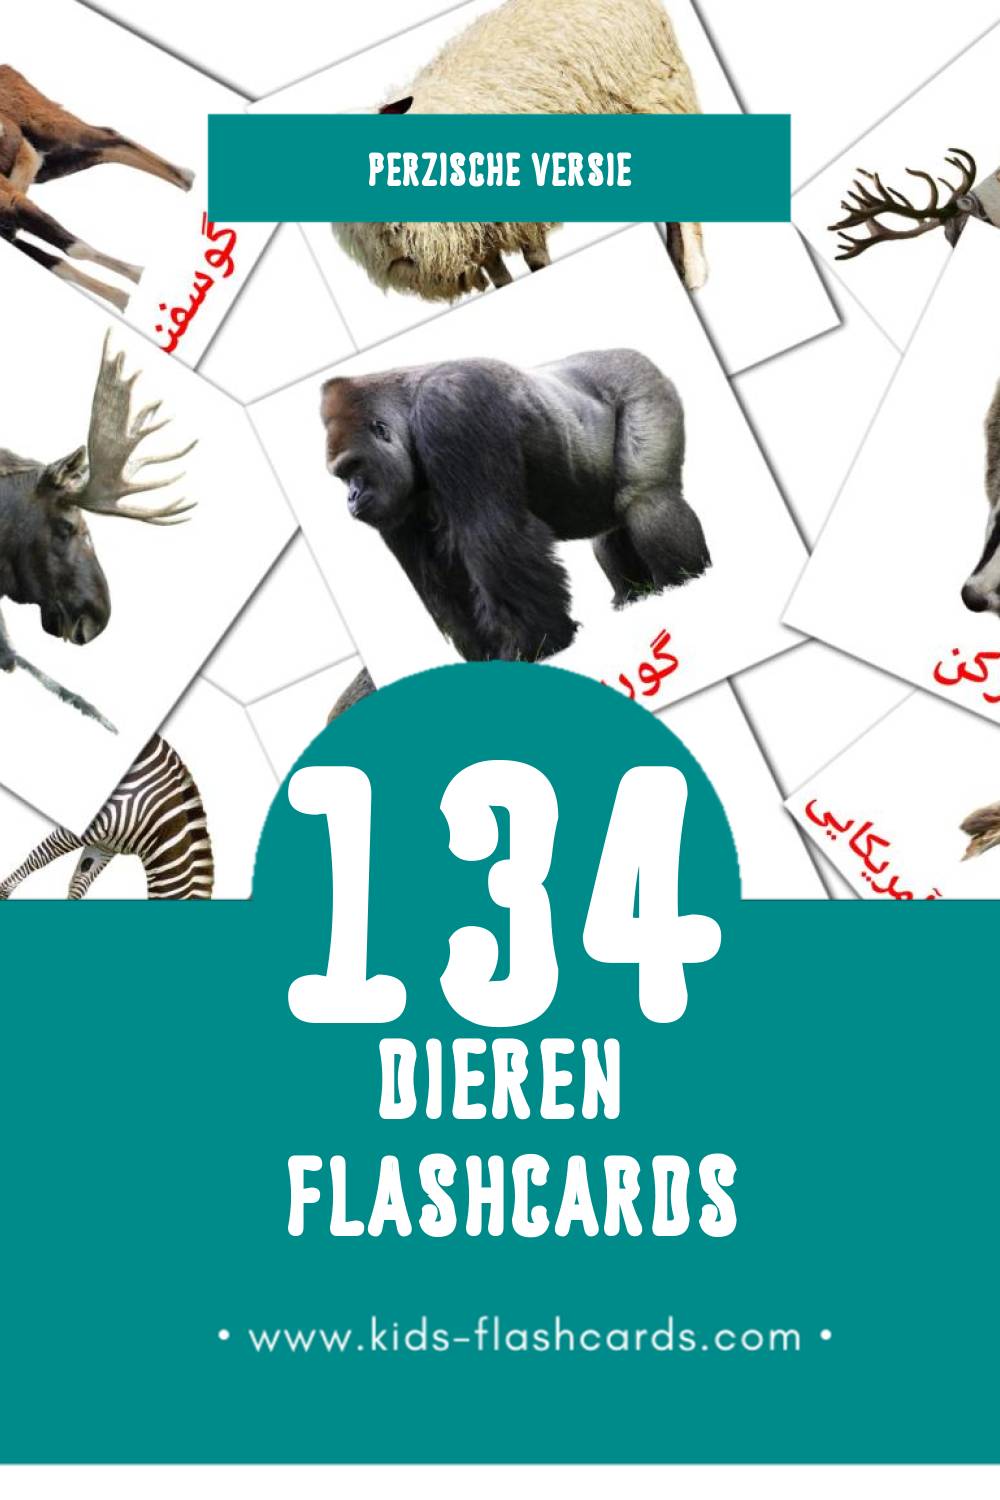 Visuele حیوانات Flashcards voor Kleuters (134 kaarten in het Perzisch)